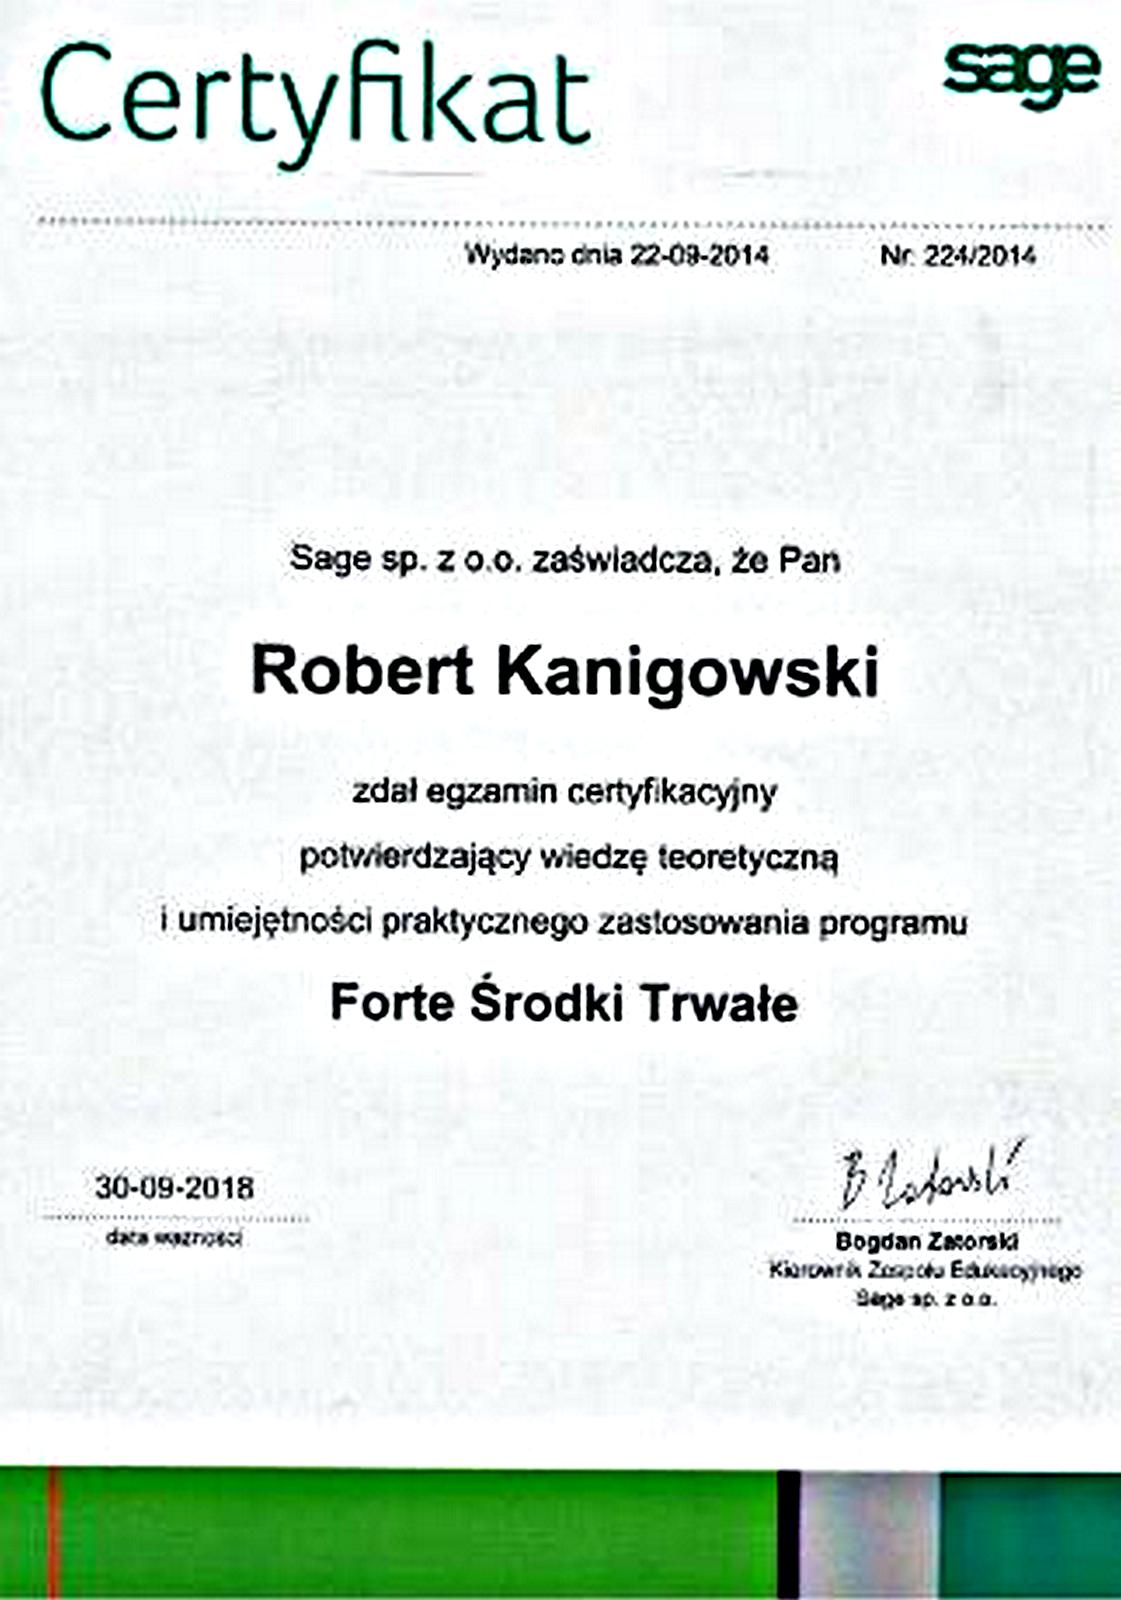 Potwierdzenie zadania egzaminu certyfikacyjnego Forte Środki Trwałe Robert Kanigowski